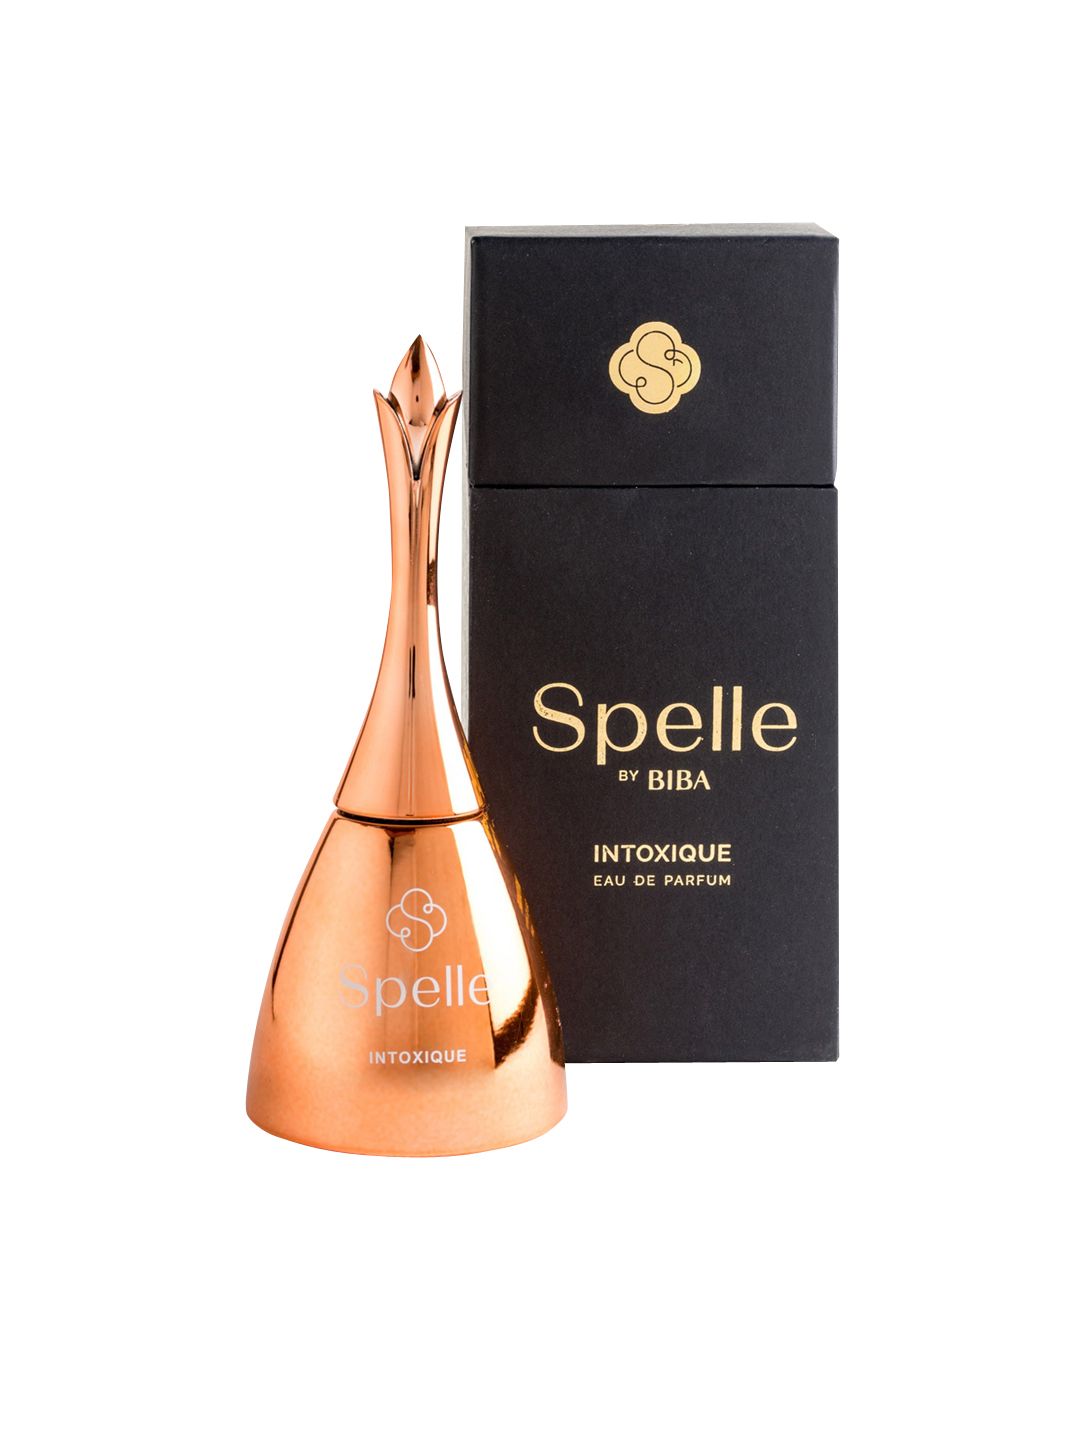 Spelle Intoxiqu Eau De Parfum - 100ml Price in India